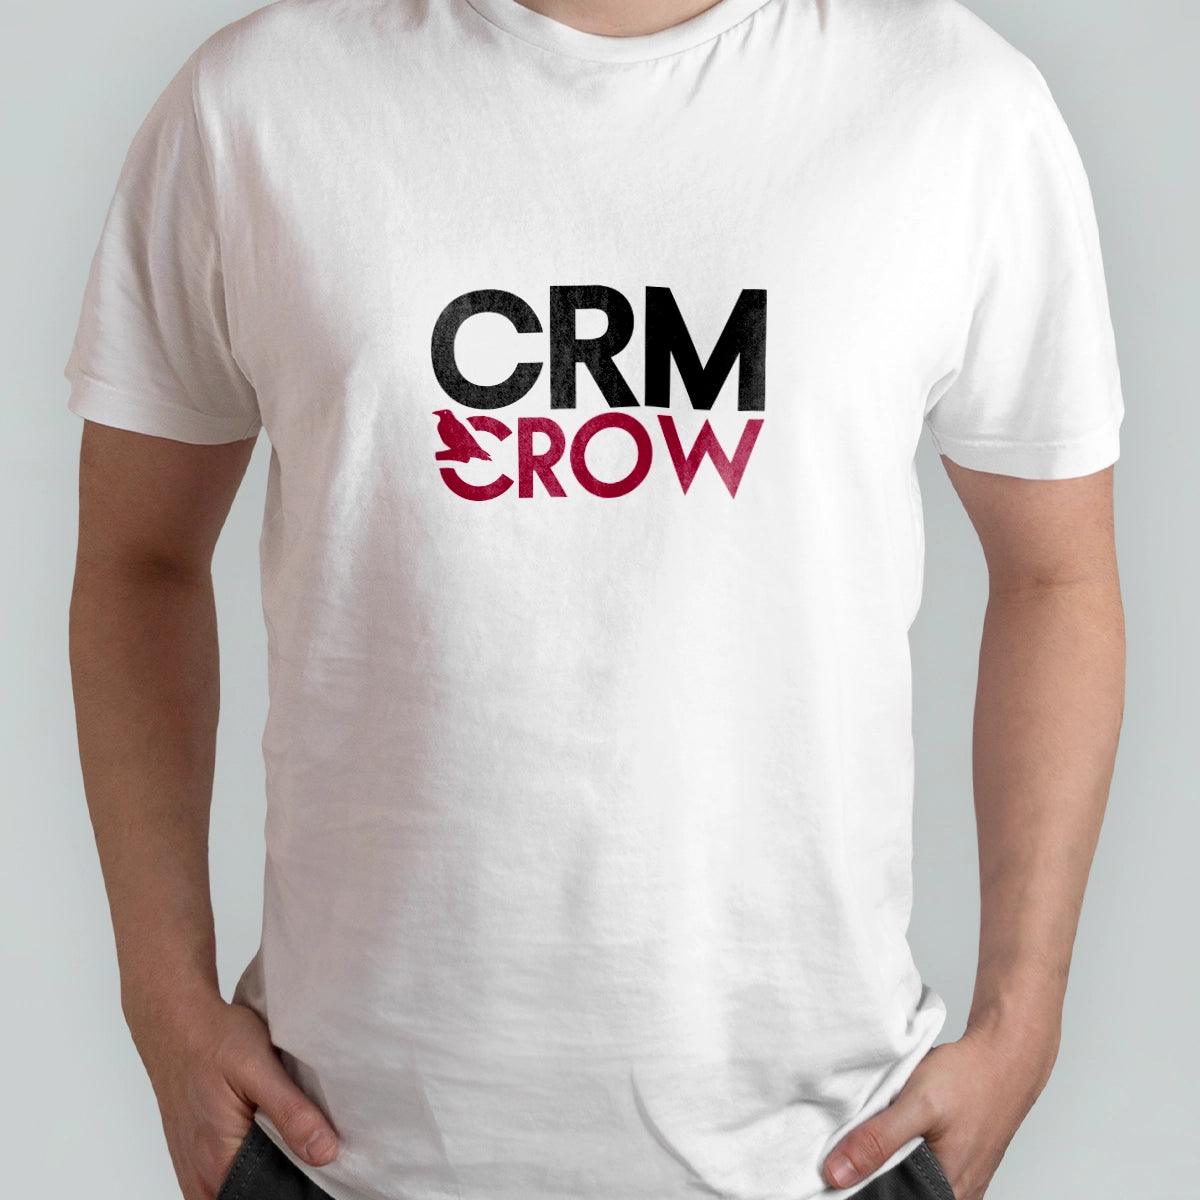 crmcrow.com